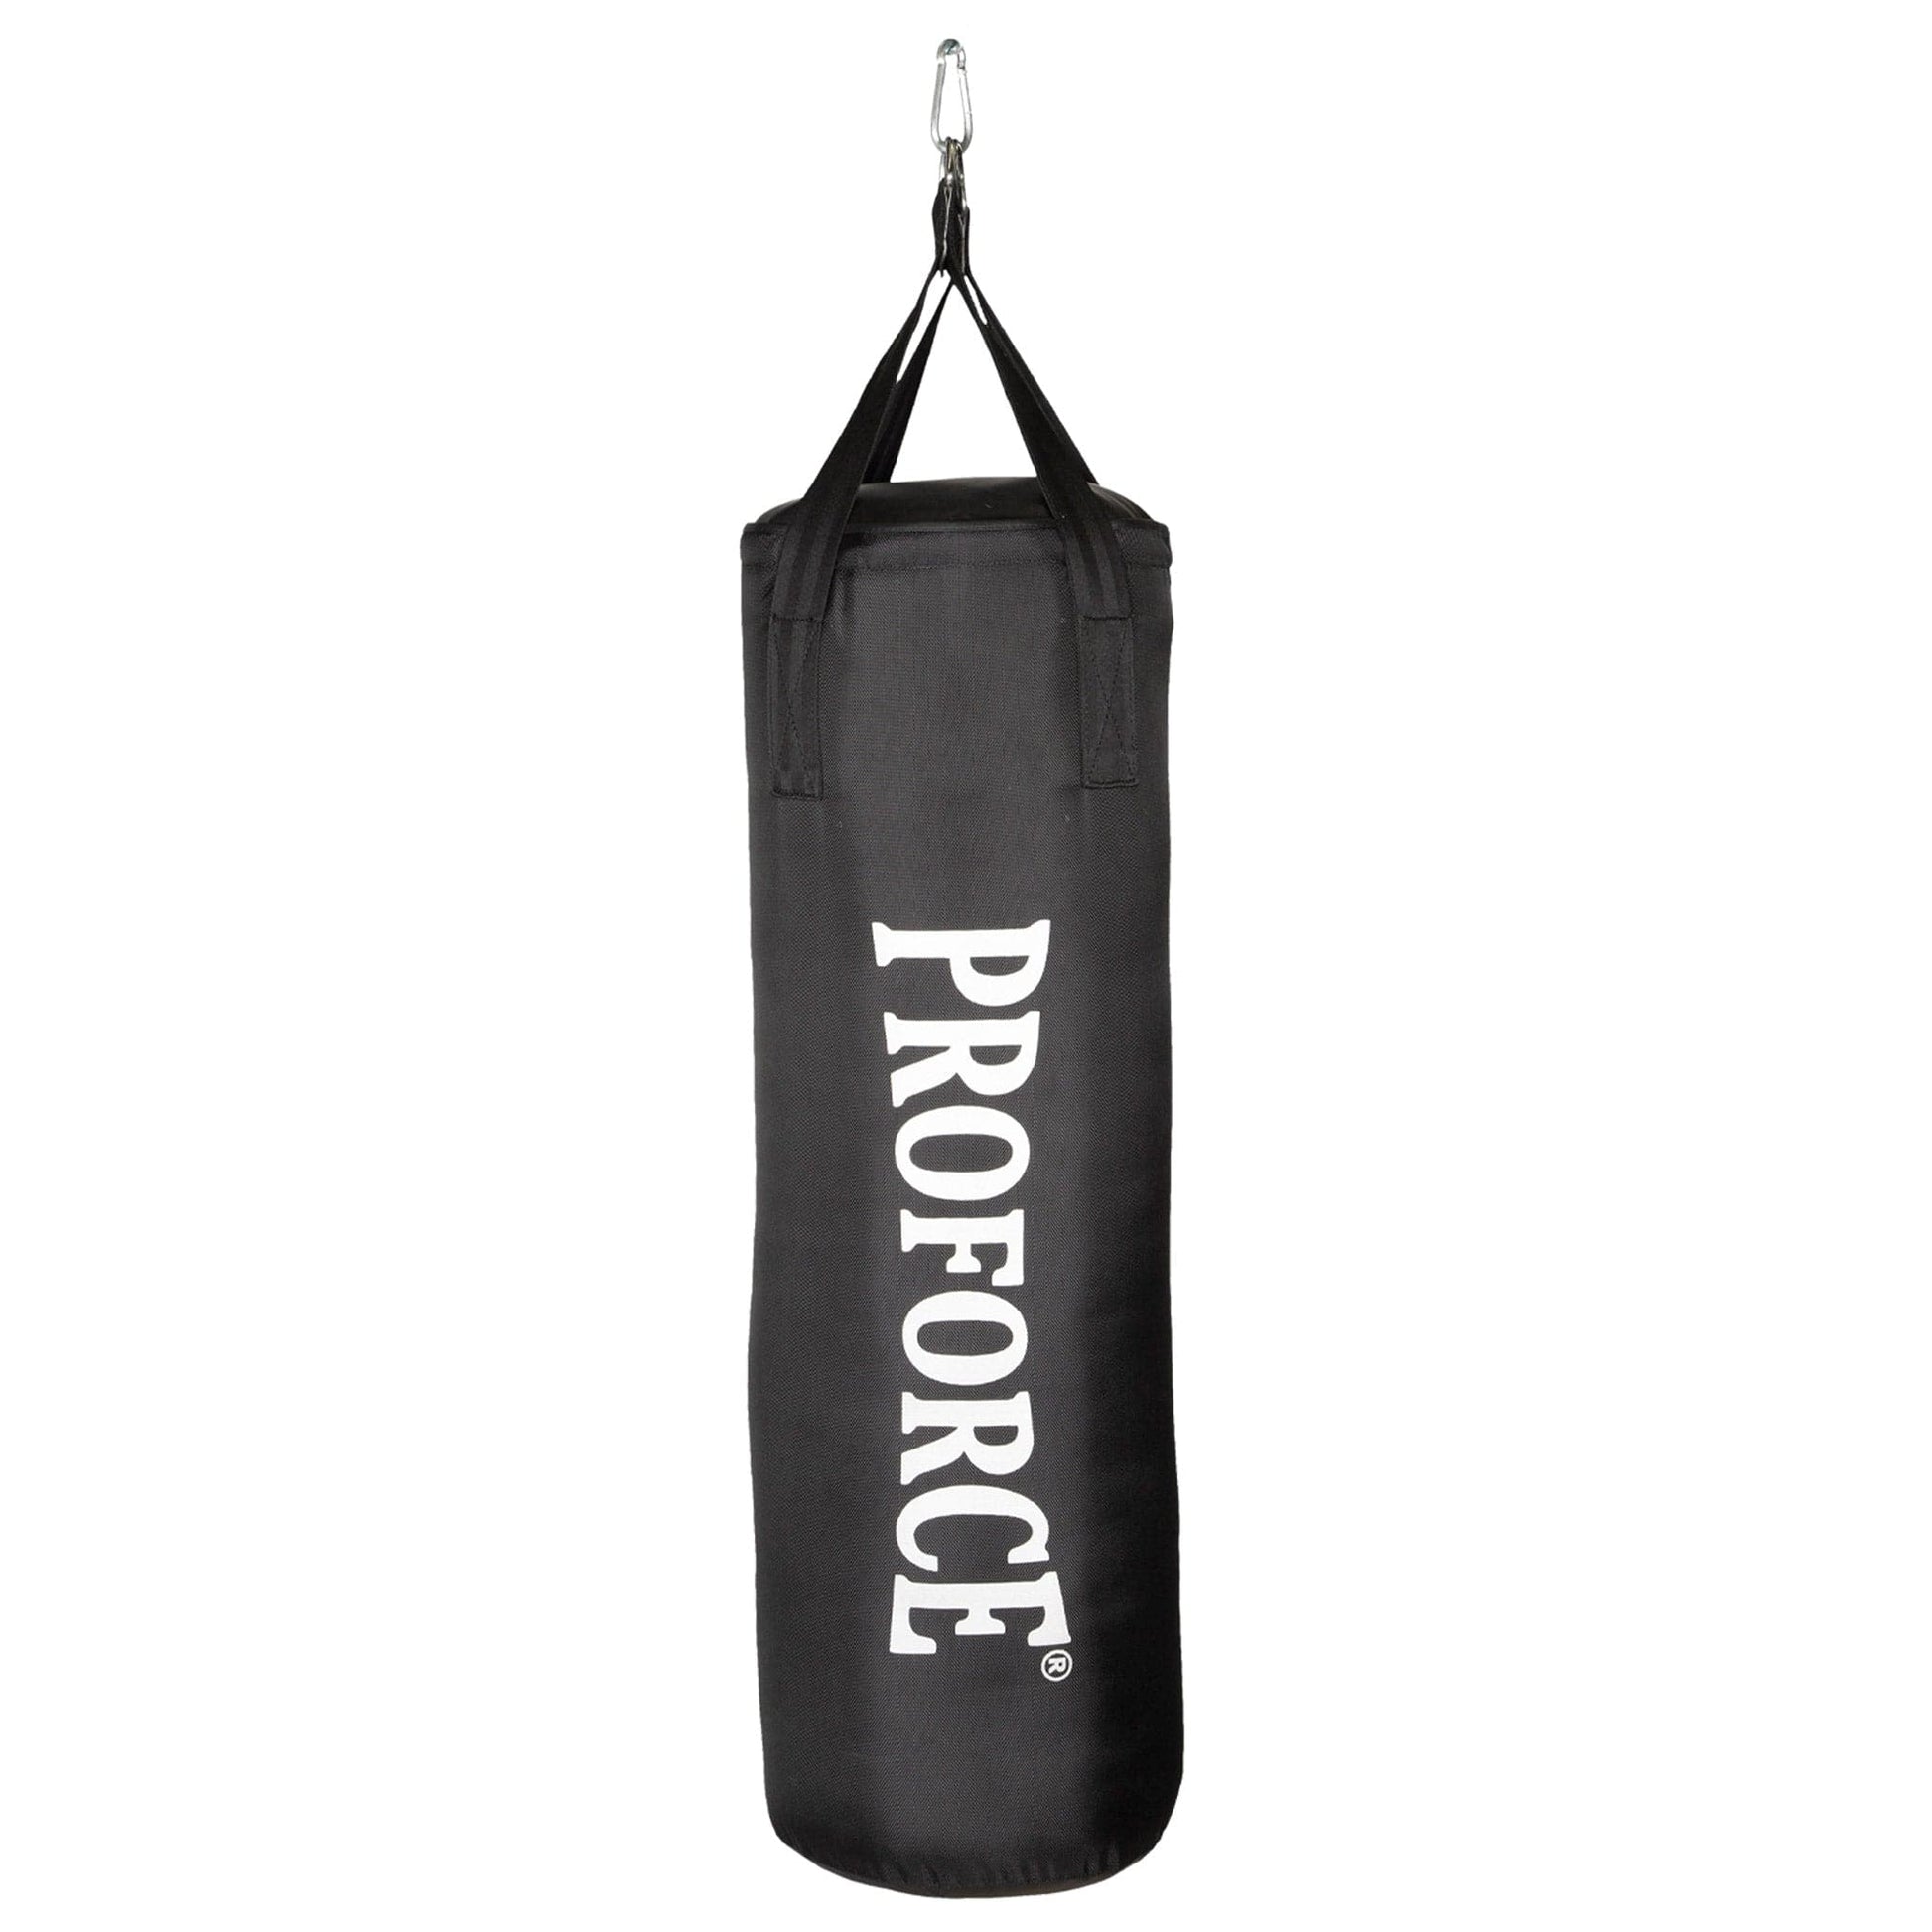 ProForce sporting goods ProForce 70 lb Heavy Bag Kit hanging punching bag